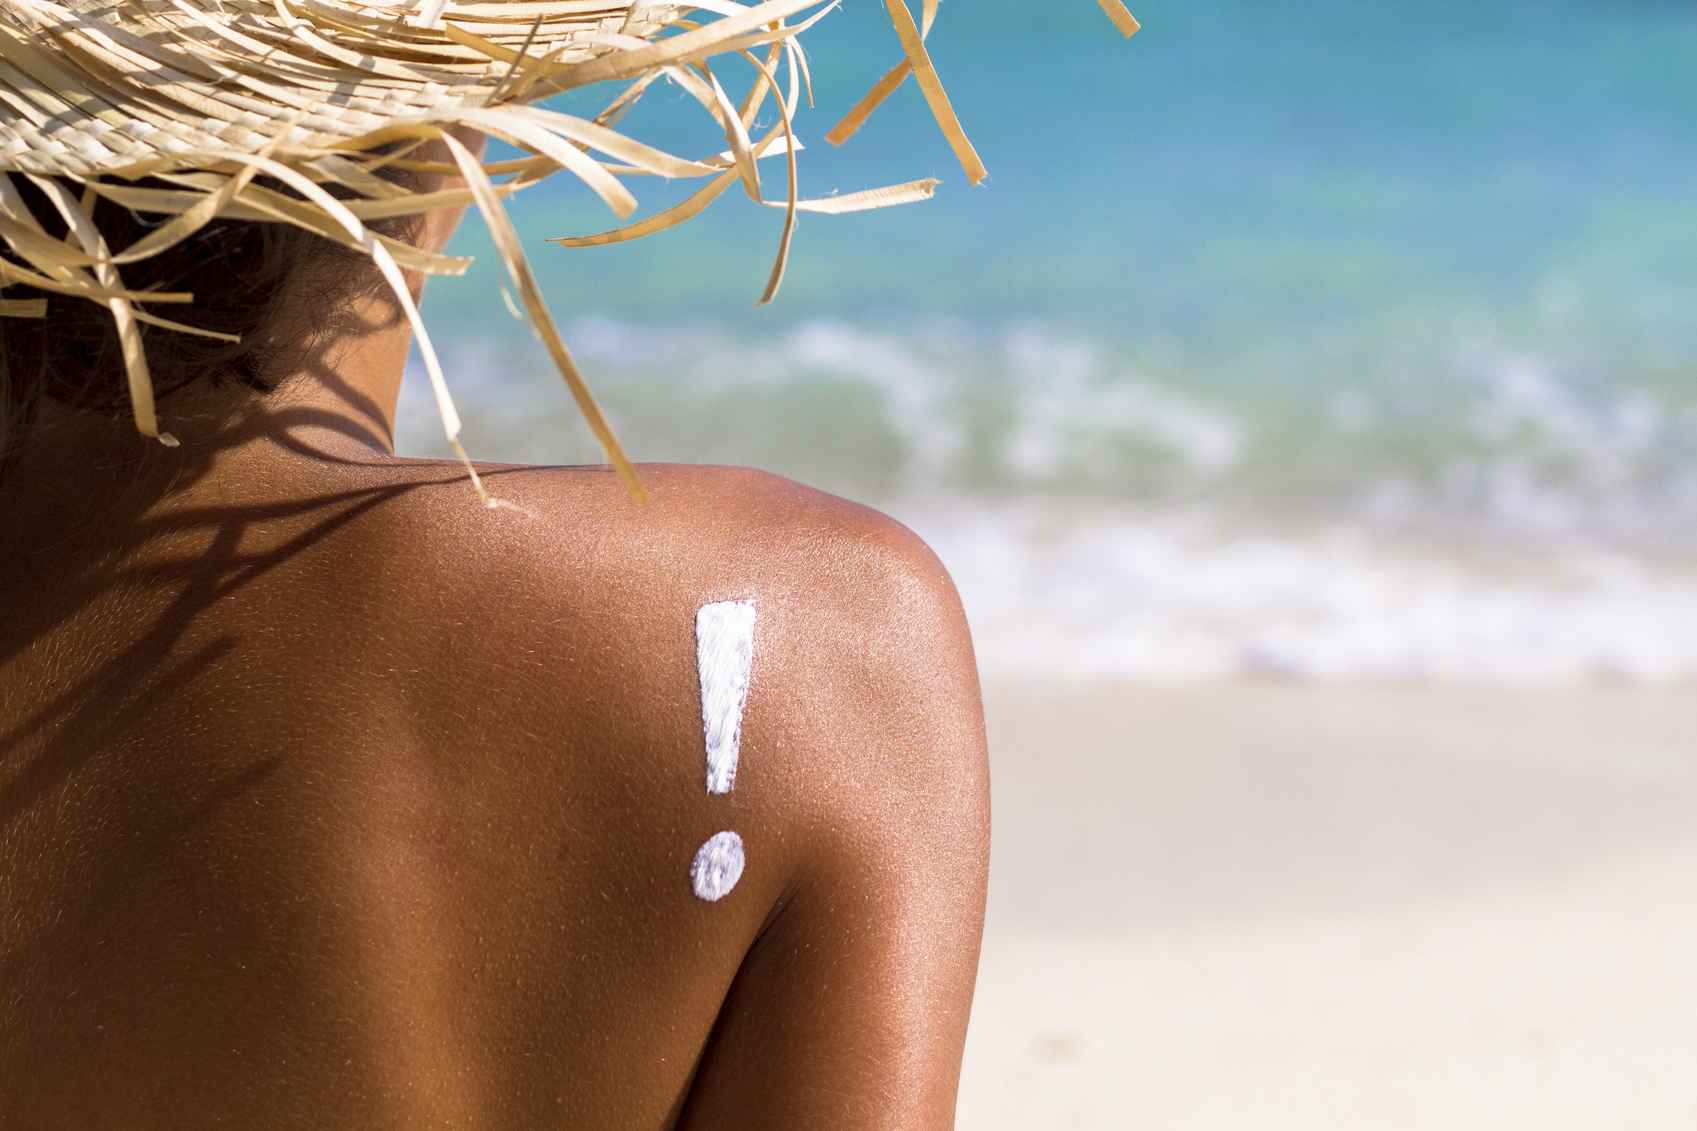 Hautpflege in the summer Sunburn mite Hausmittel sun protection sunscreen